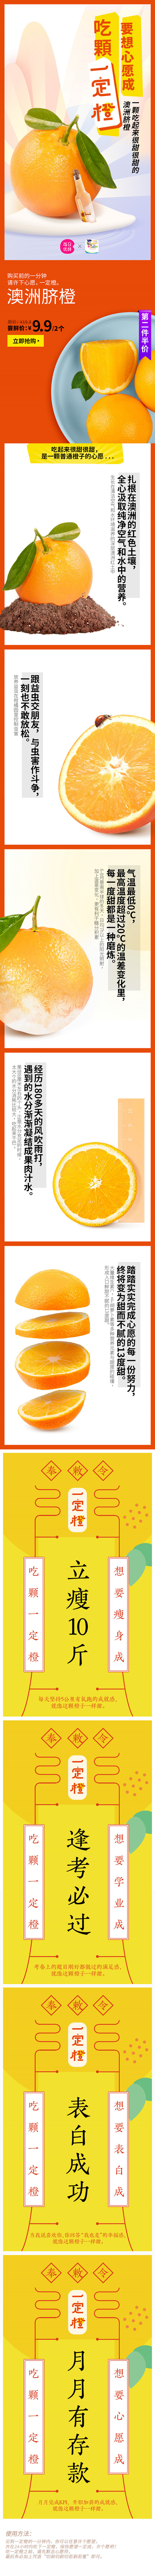 要想心愿成，吃颗一定橙 澳洲脐橙